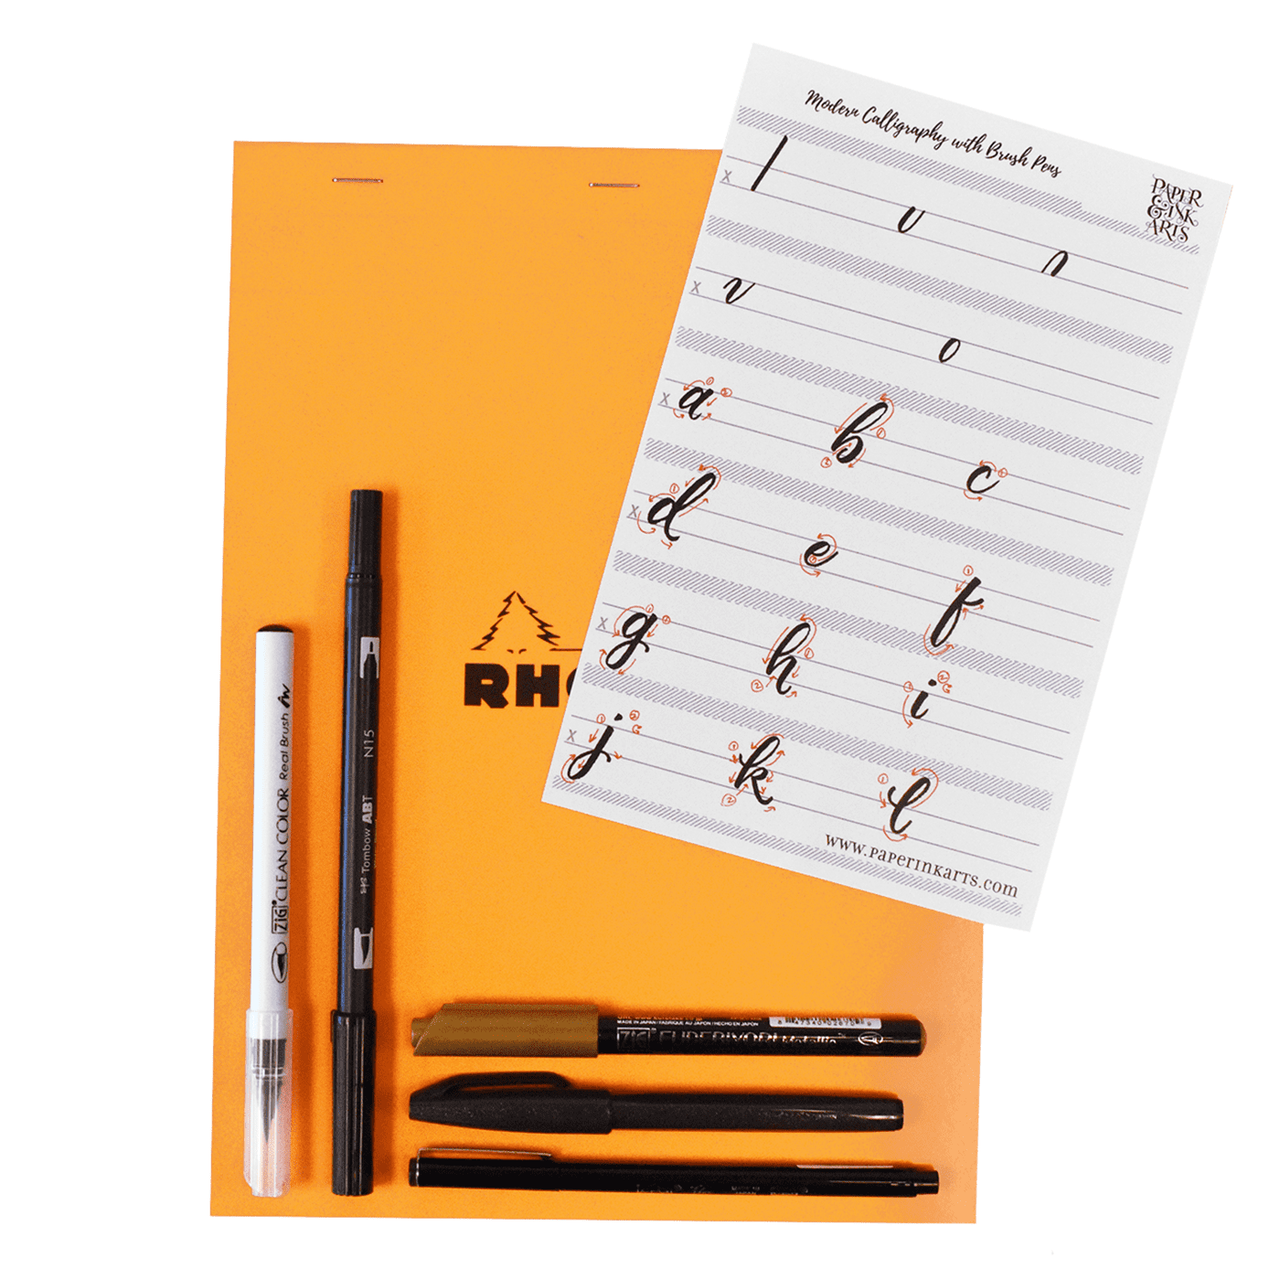 Deluxe Modern Brush Lettering Kit